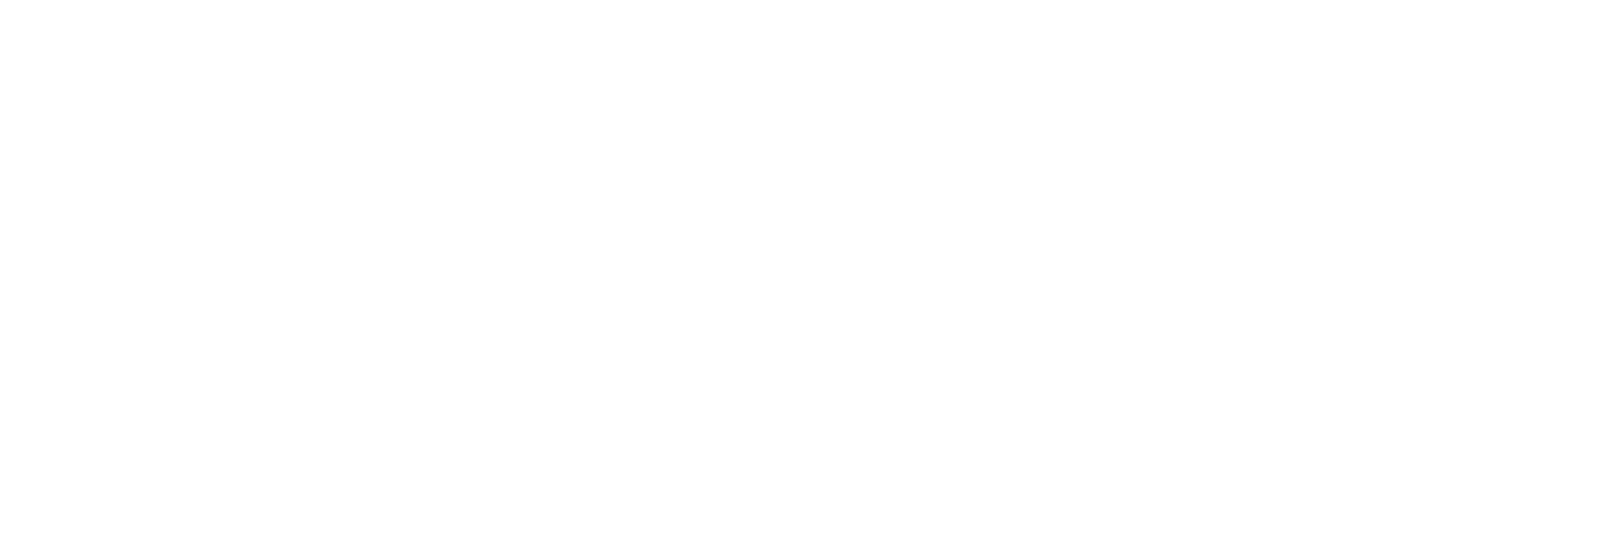 Lenovo Logo Image PNG